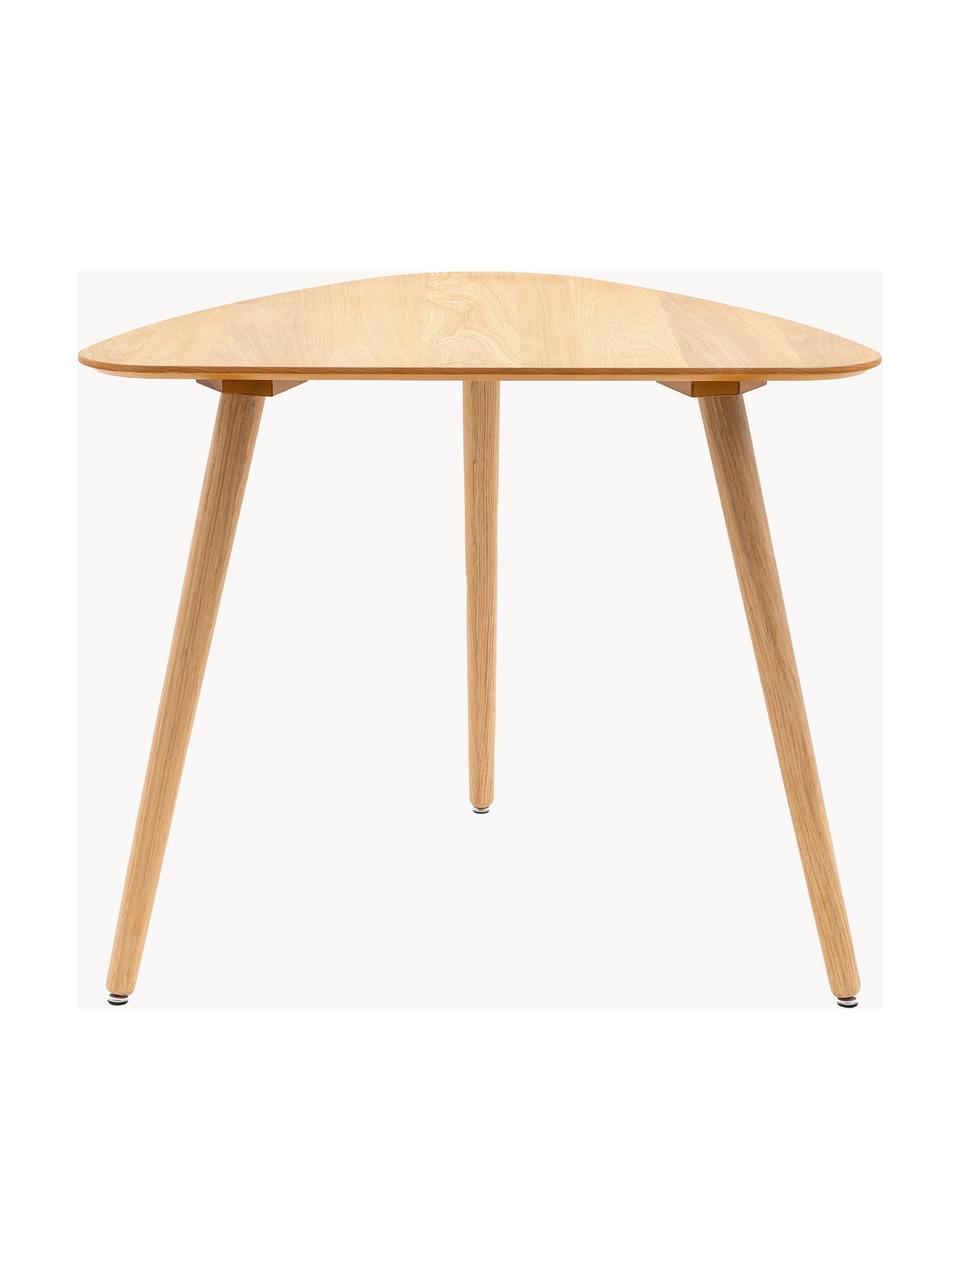 Drevený jedálenský stôl Hatfield, 80 x 90 cm, Dubové drevo, Š 80 x H 90 cm